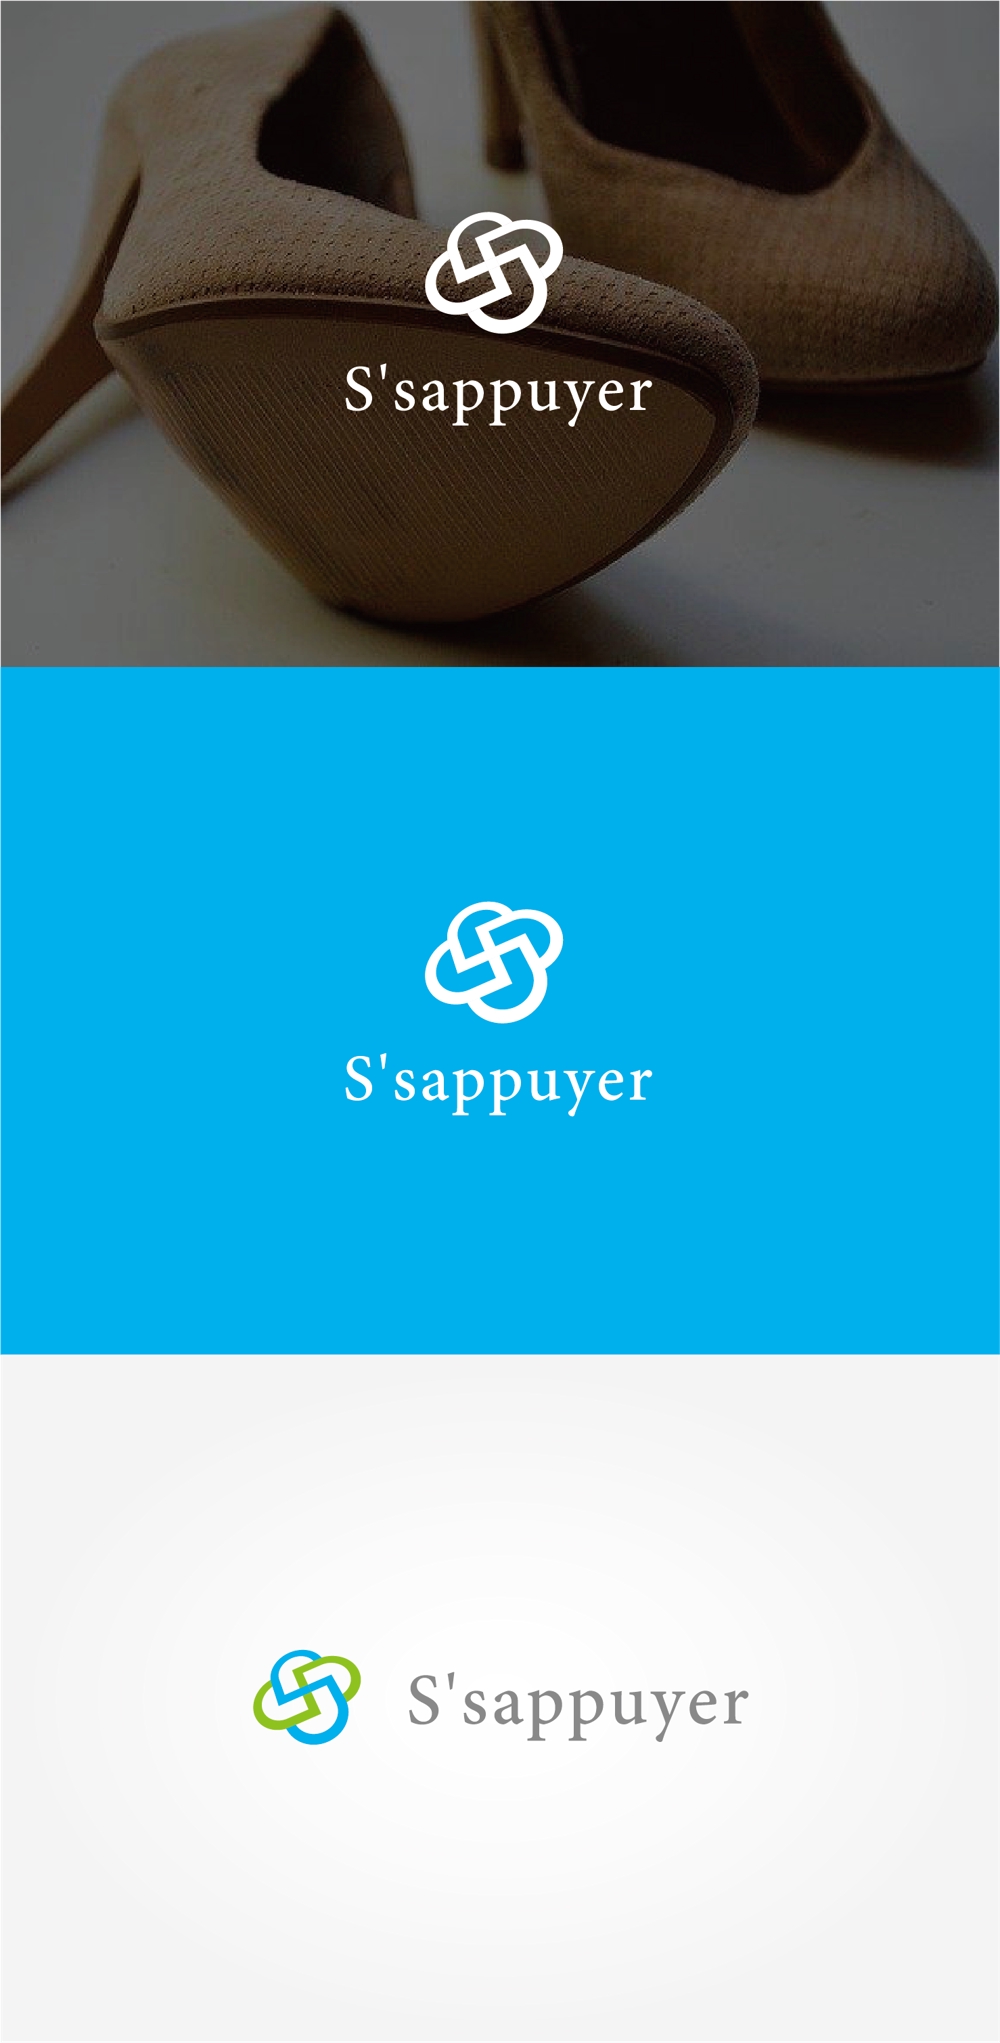 シューズセレクトショップ「S'appuyer」のロゴ